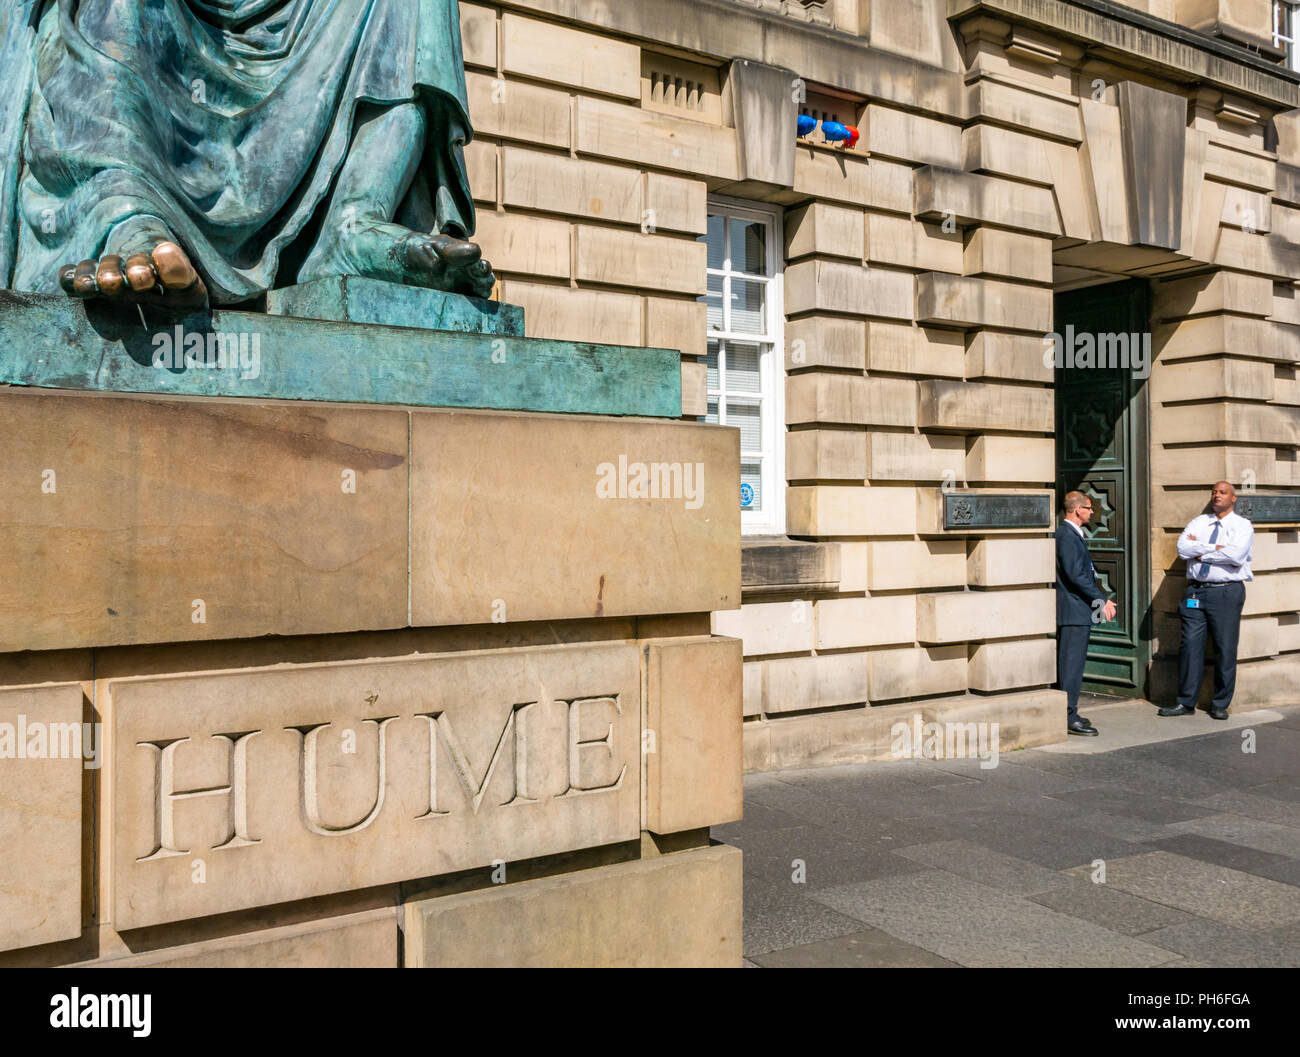 David Hume Bronze Statue von Alexander Stoddart, Edinburgh High Court von Justiciary, Royal Mile, Edinburgh, Schottland, Großbritannien, mit rieb Zehen Stockfoto